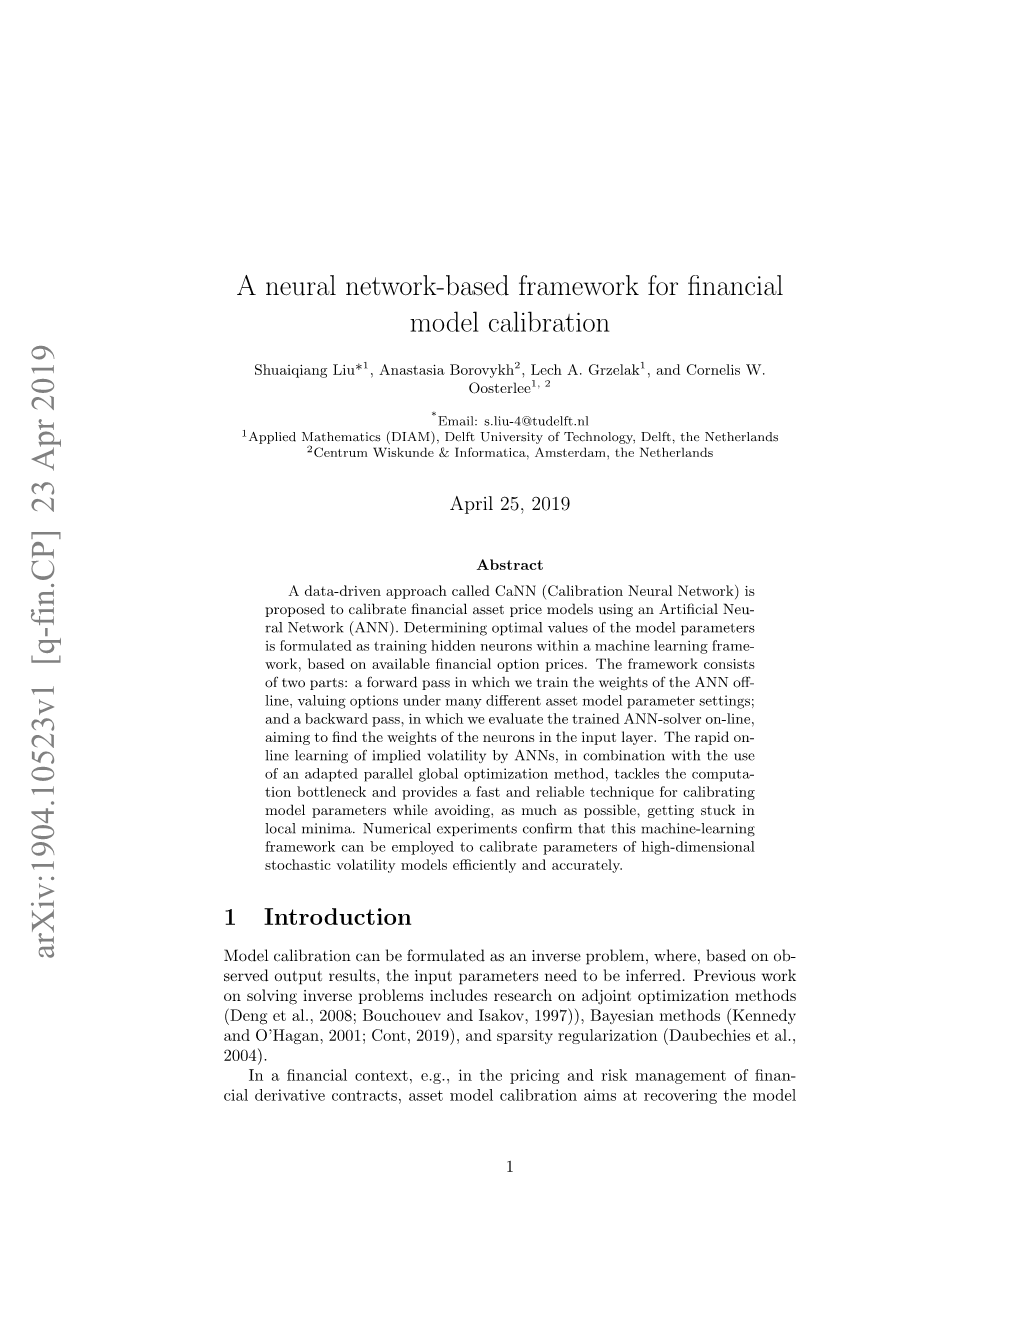 A Neural Network-Based Framework for Financial Model Calibration